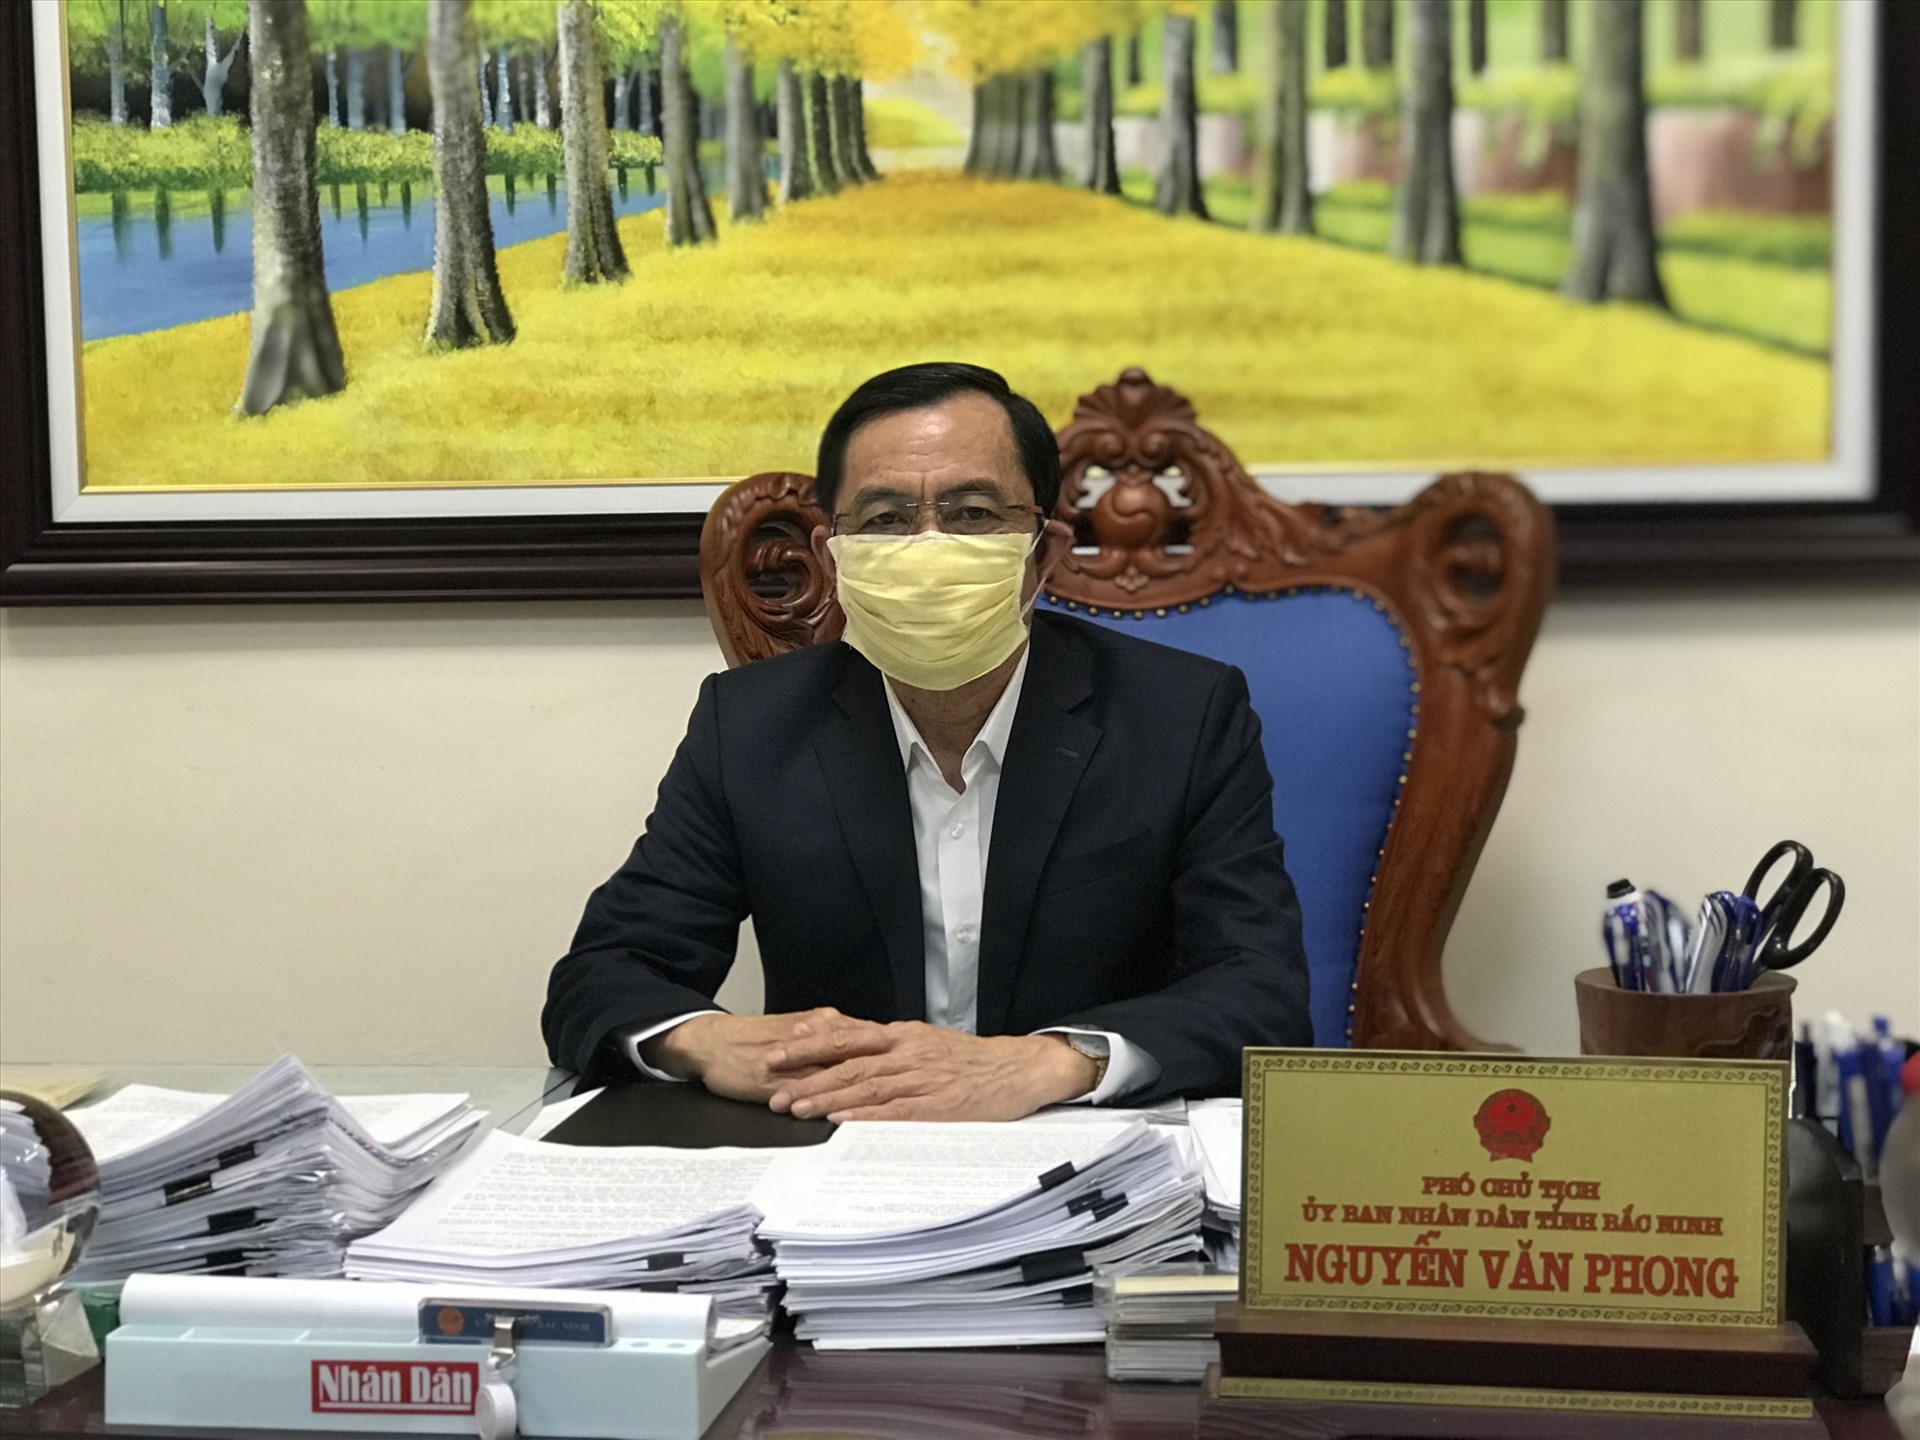 Ông Nguyễn Văn Phong- Phó Chủ tịch UBND tỉnh Bắc Ninh trả lời phỏng vấn báo Lao Động. Ảnh: Thùy Linh